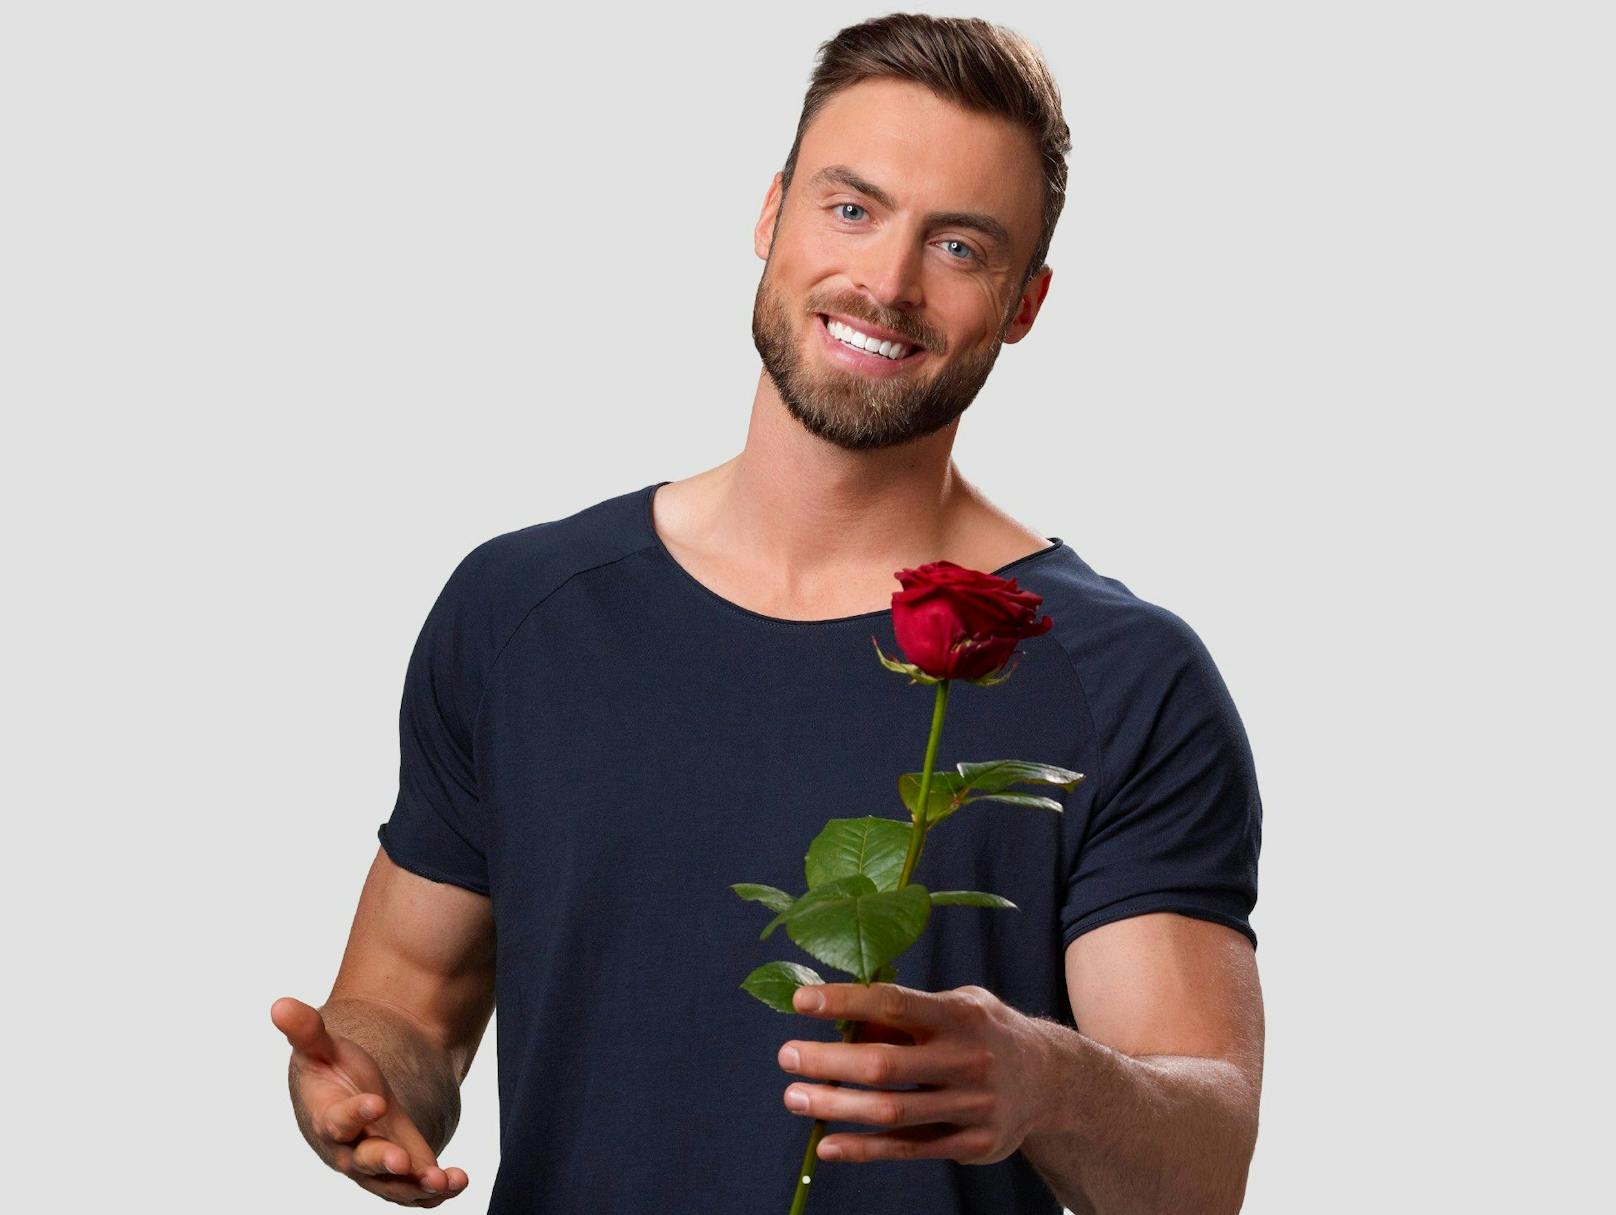 Seine Rosen wird der "Bachelor" diesmal ausschließlich in Deutschland verteilen.